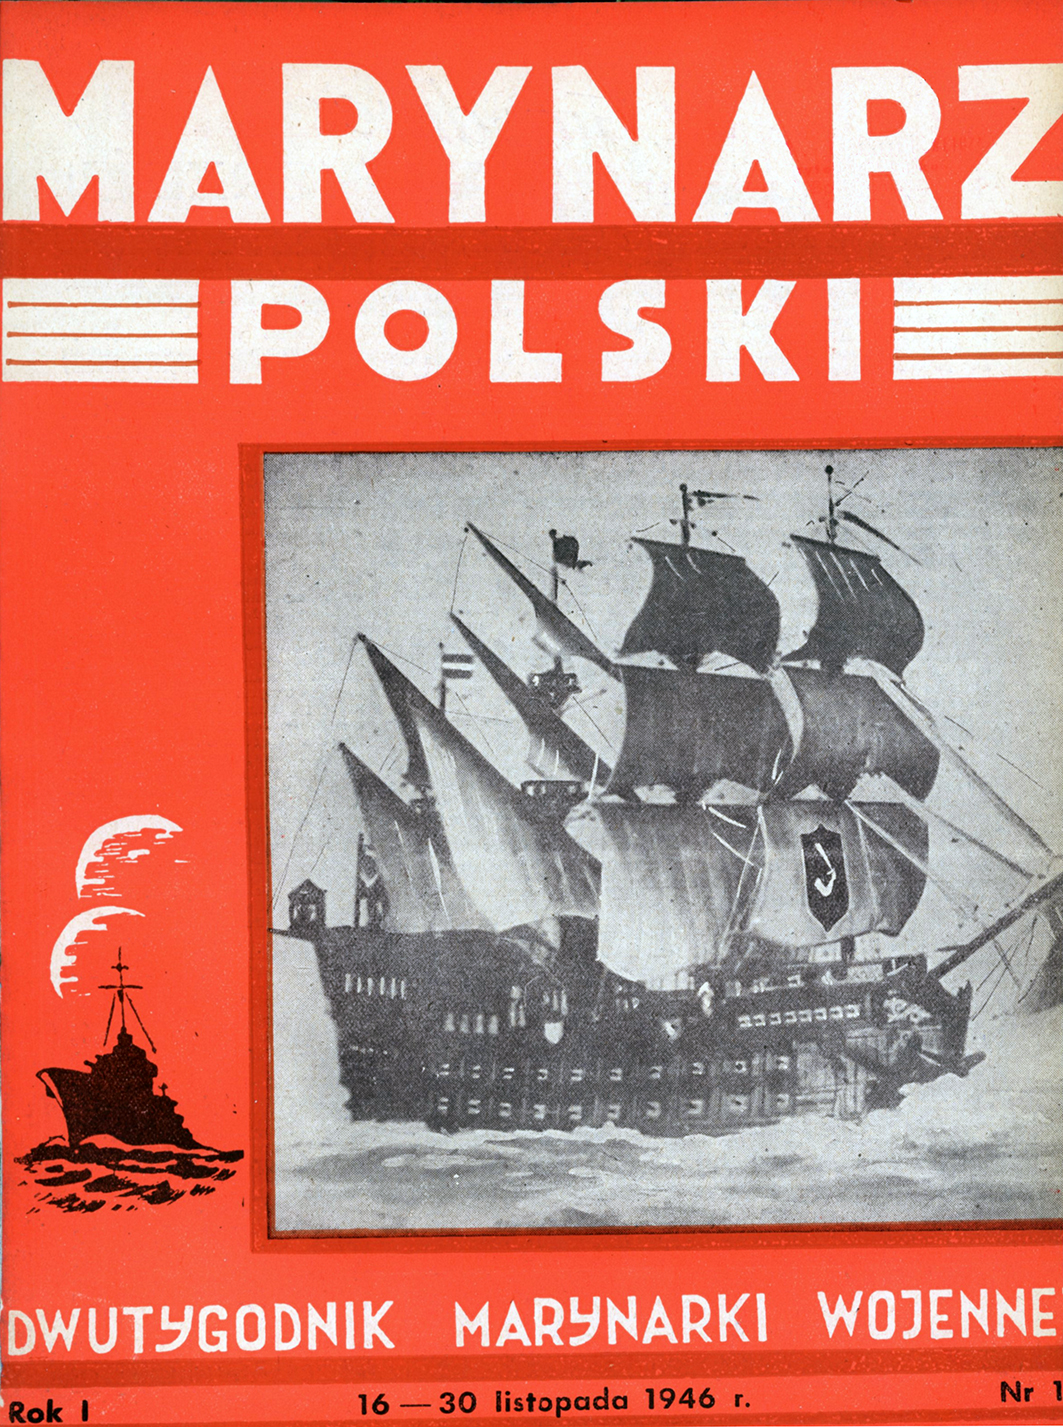 Marynarz Polski : miesięcznik Marynarki Wojennej. - Gdynia : Zarząd Pol.- Wych. Marynarki Wojennej, 1946, 15 - 31 listopad